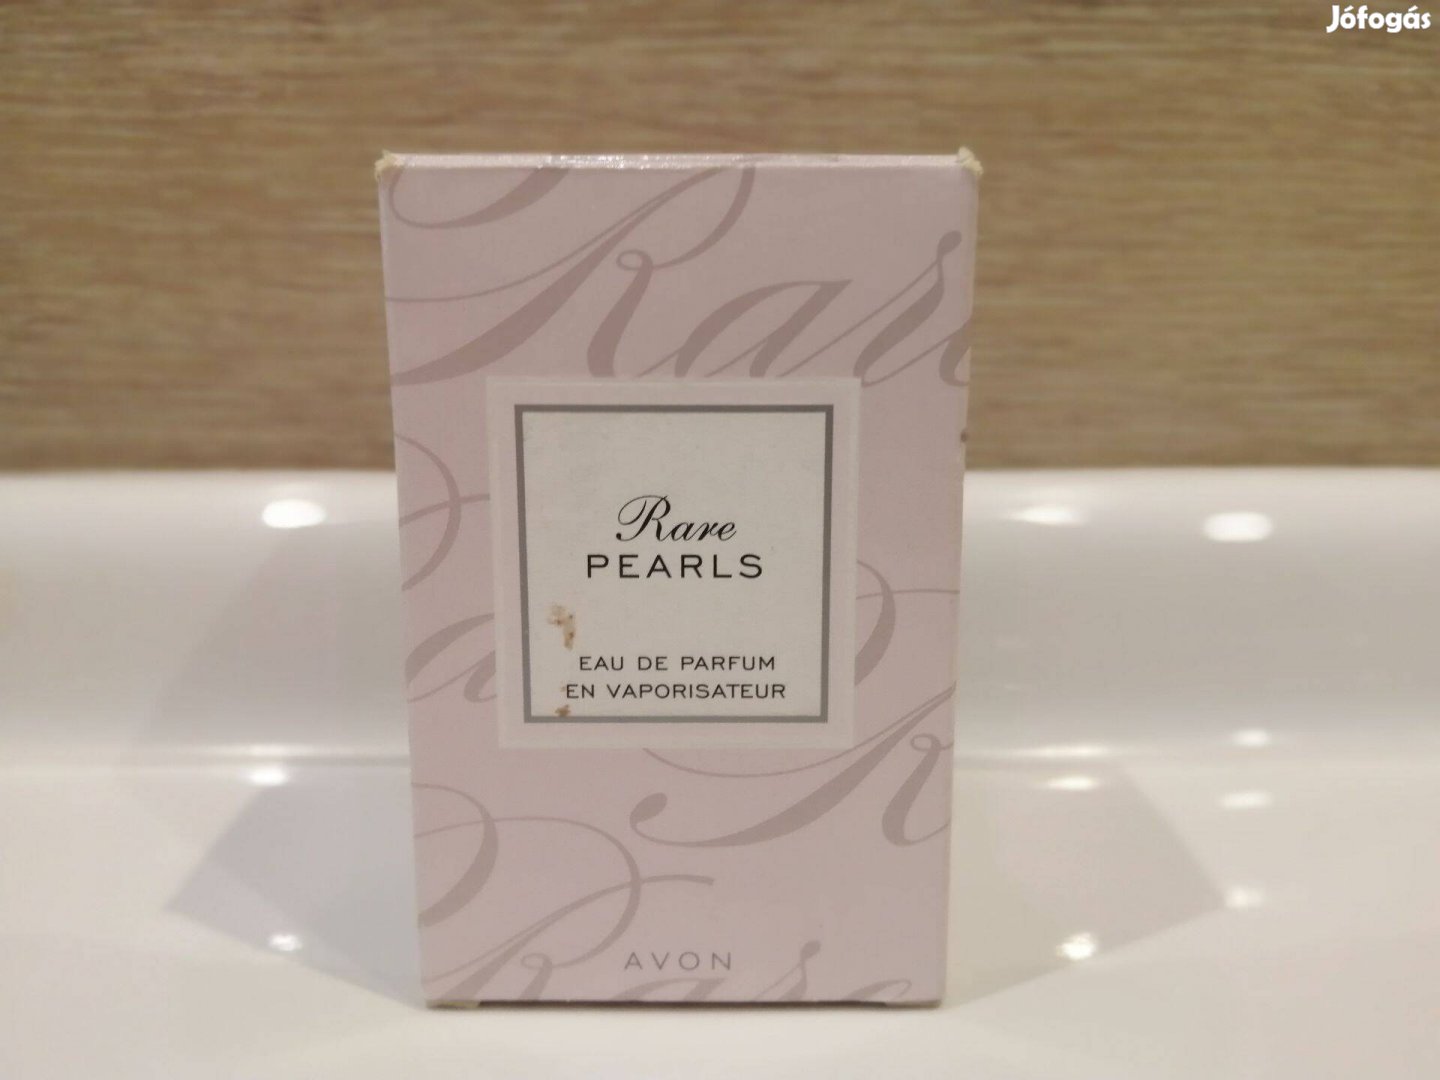 Rare Pearls parfüm